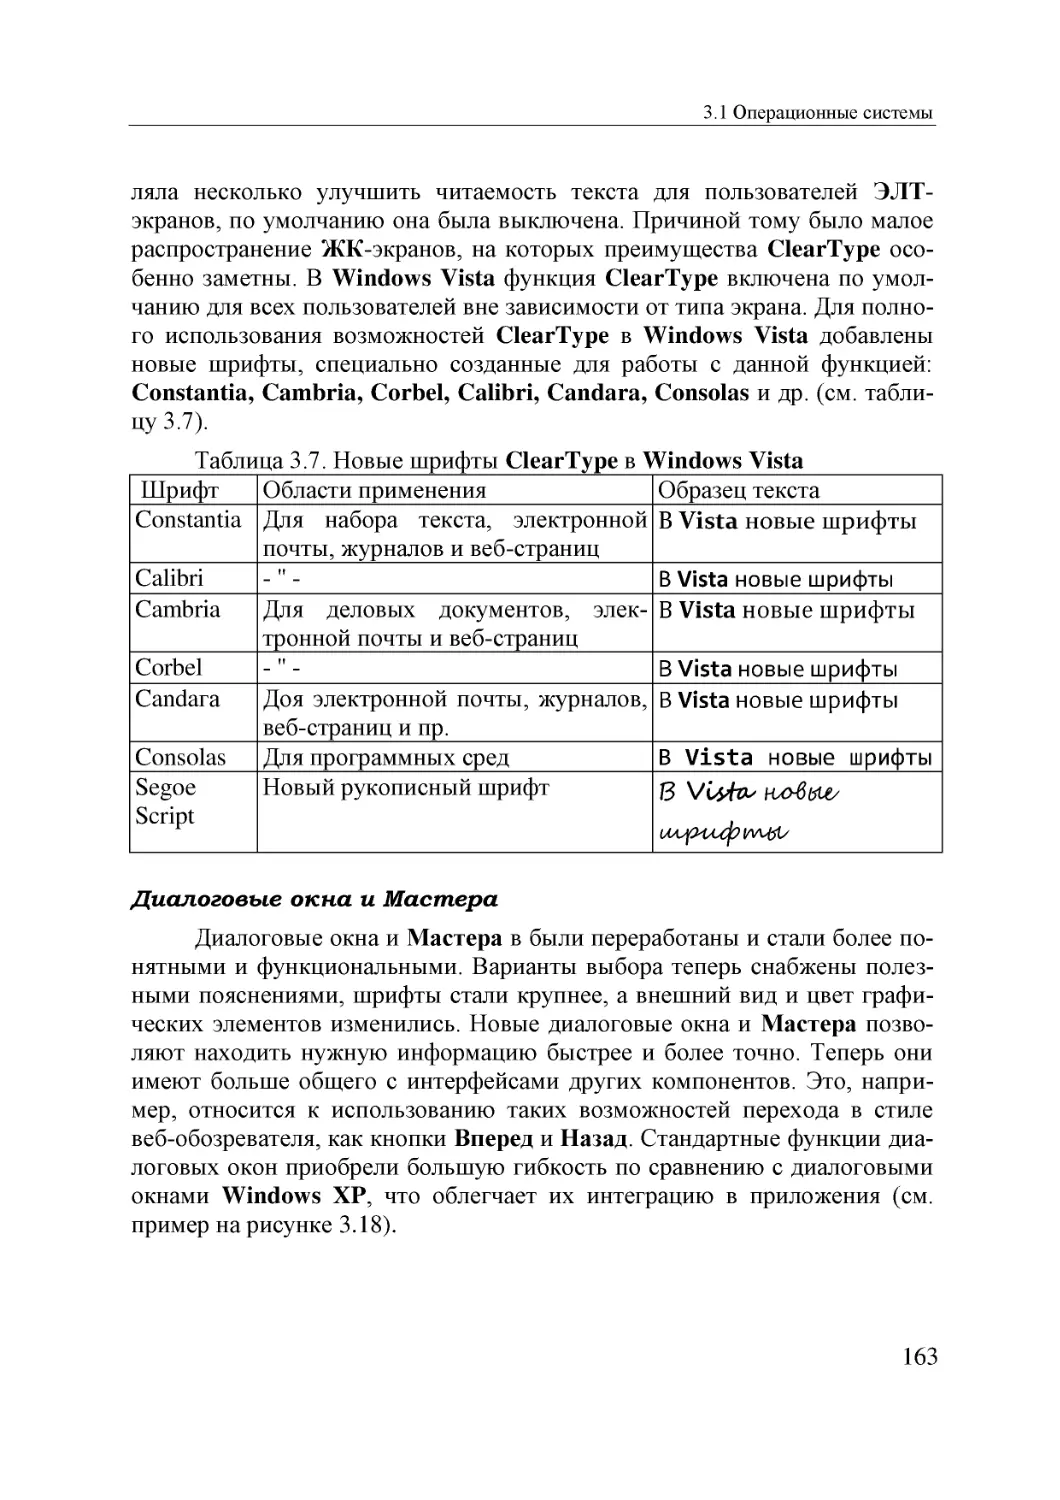 Informatika_Uchebnik_dlya_vuzov_2010 163